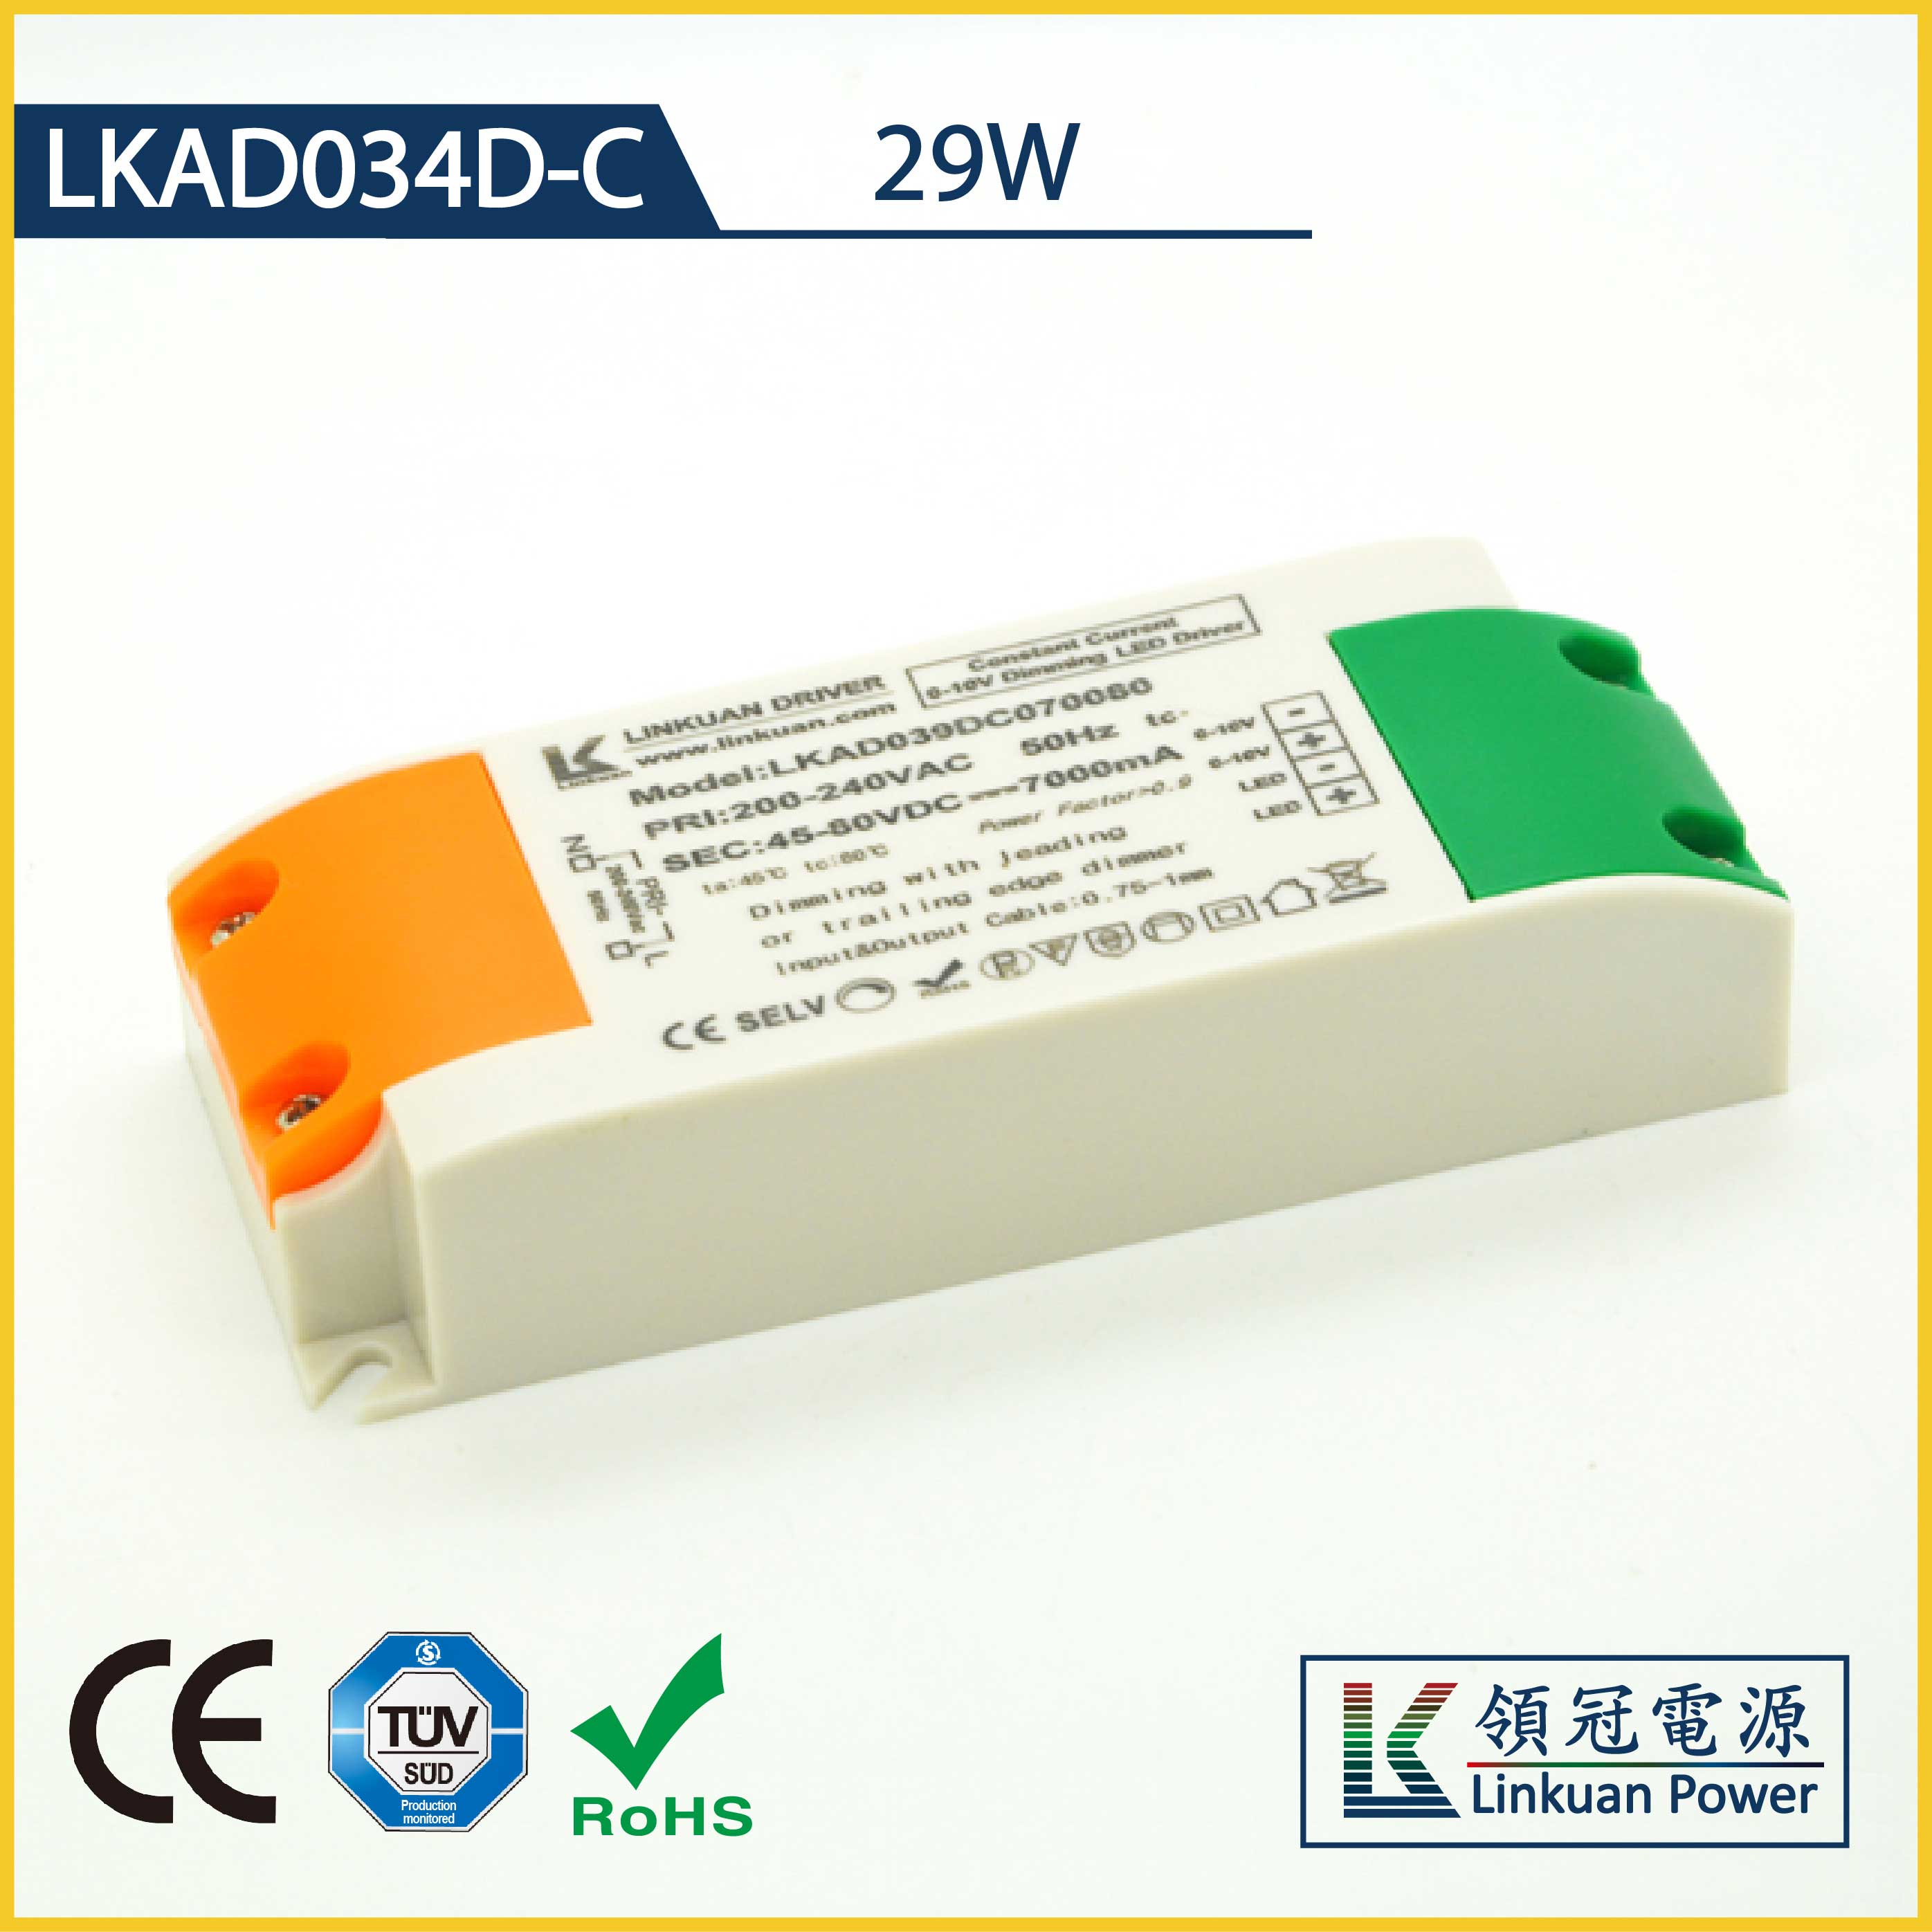 29W   3C/CB/CE认证0-10V调光电源LKAD034D-C